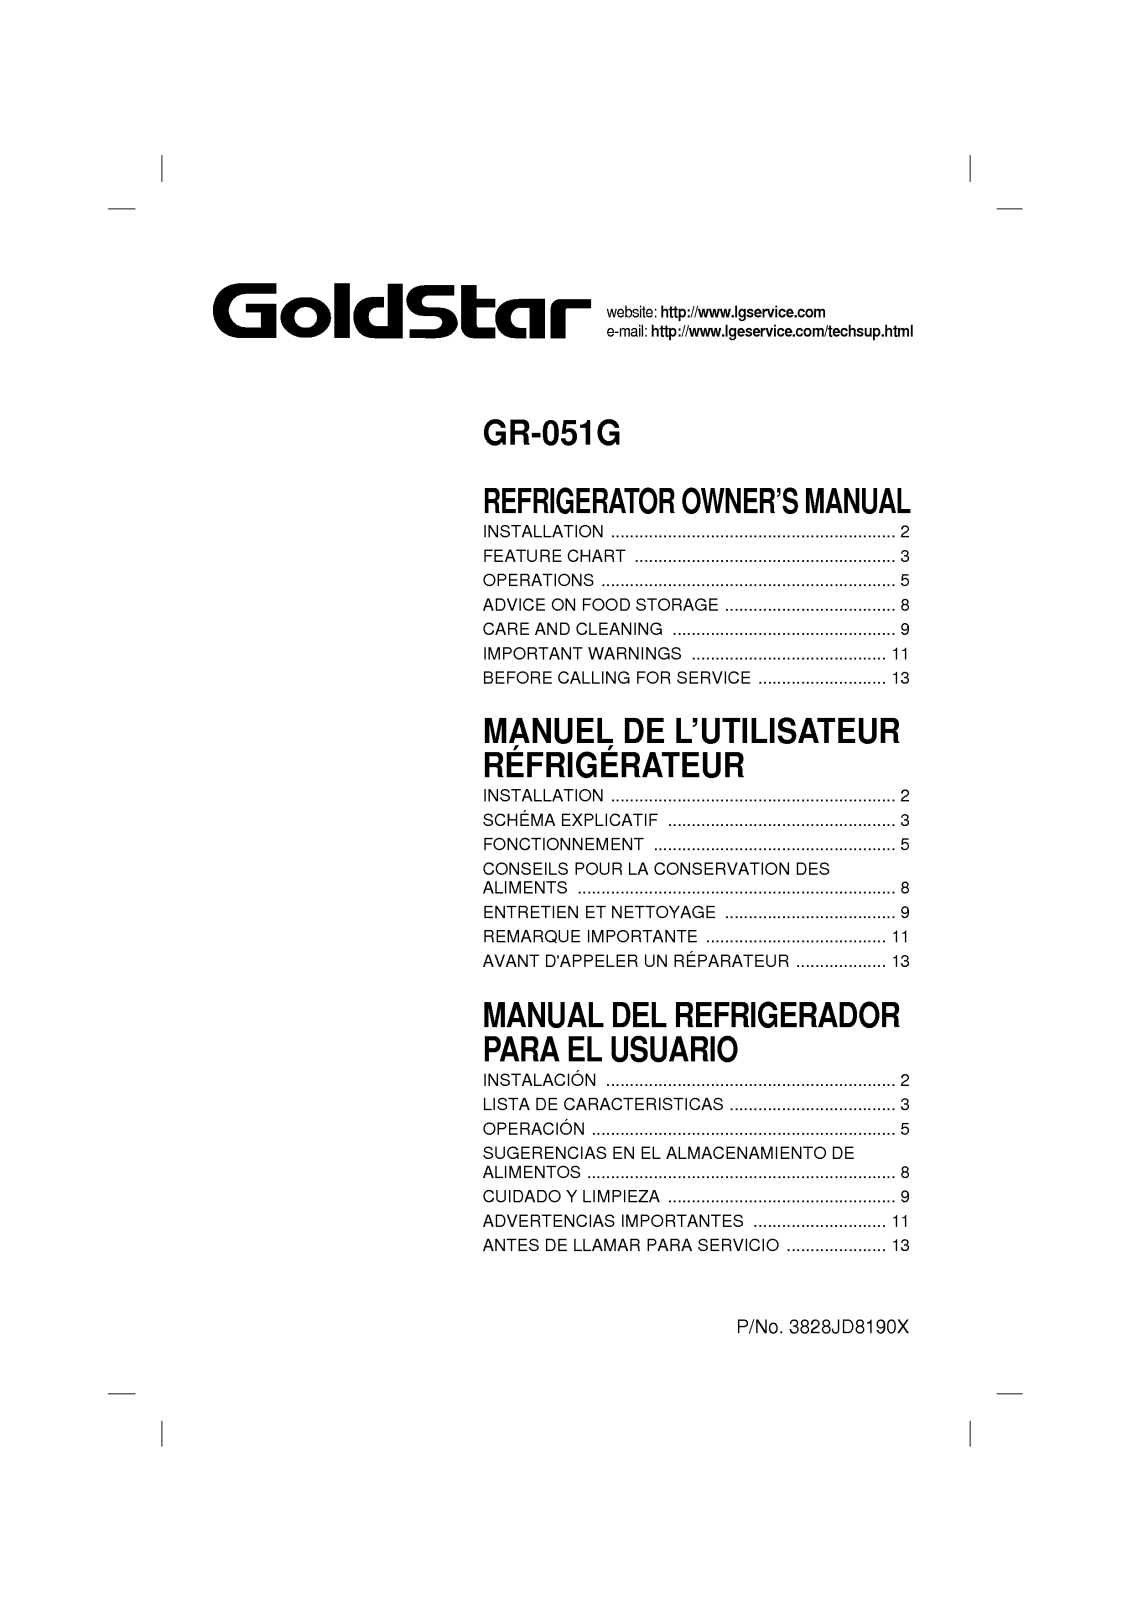 LG GR-051G User Manual